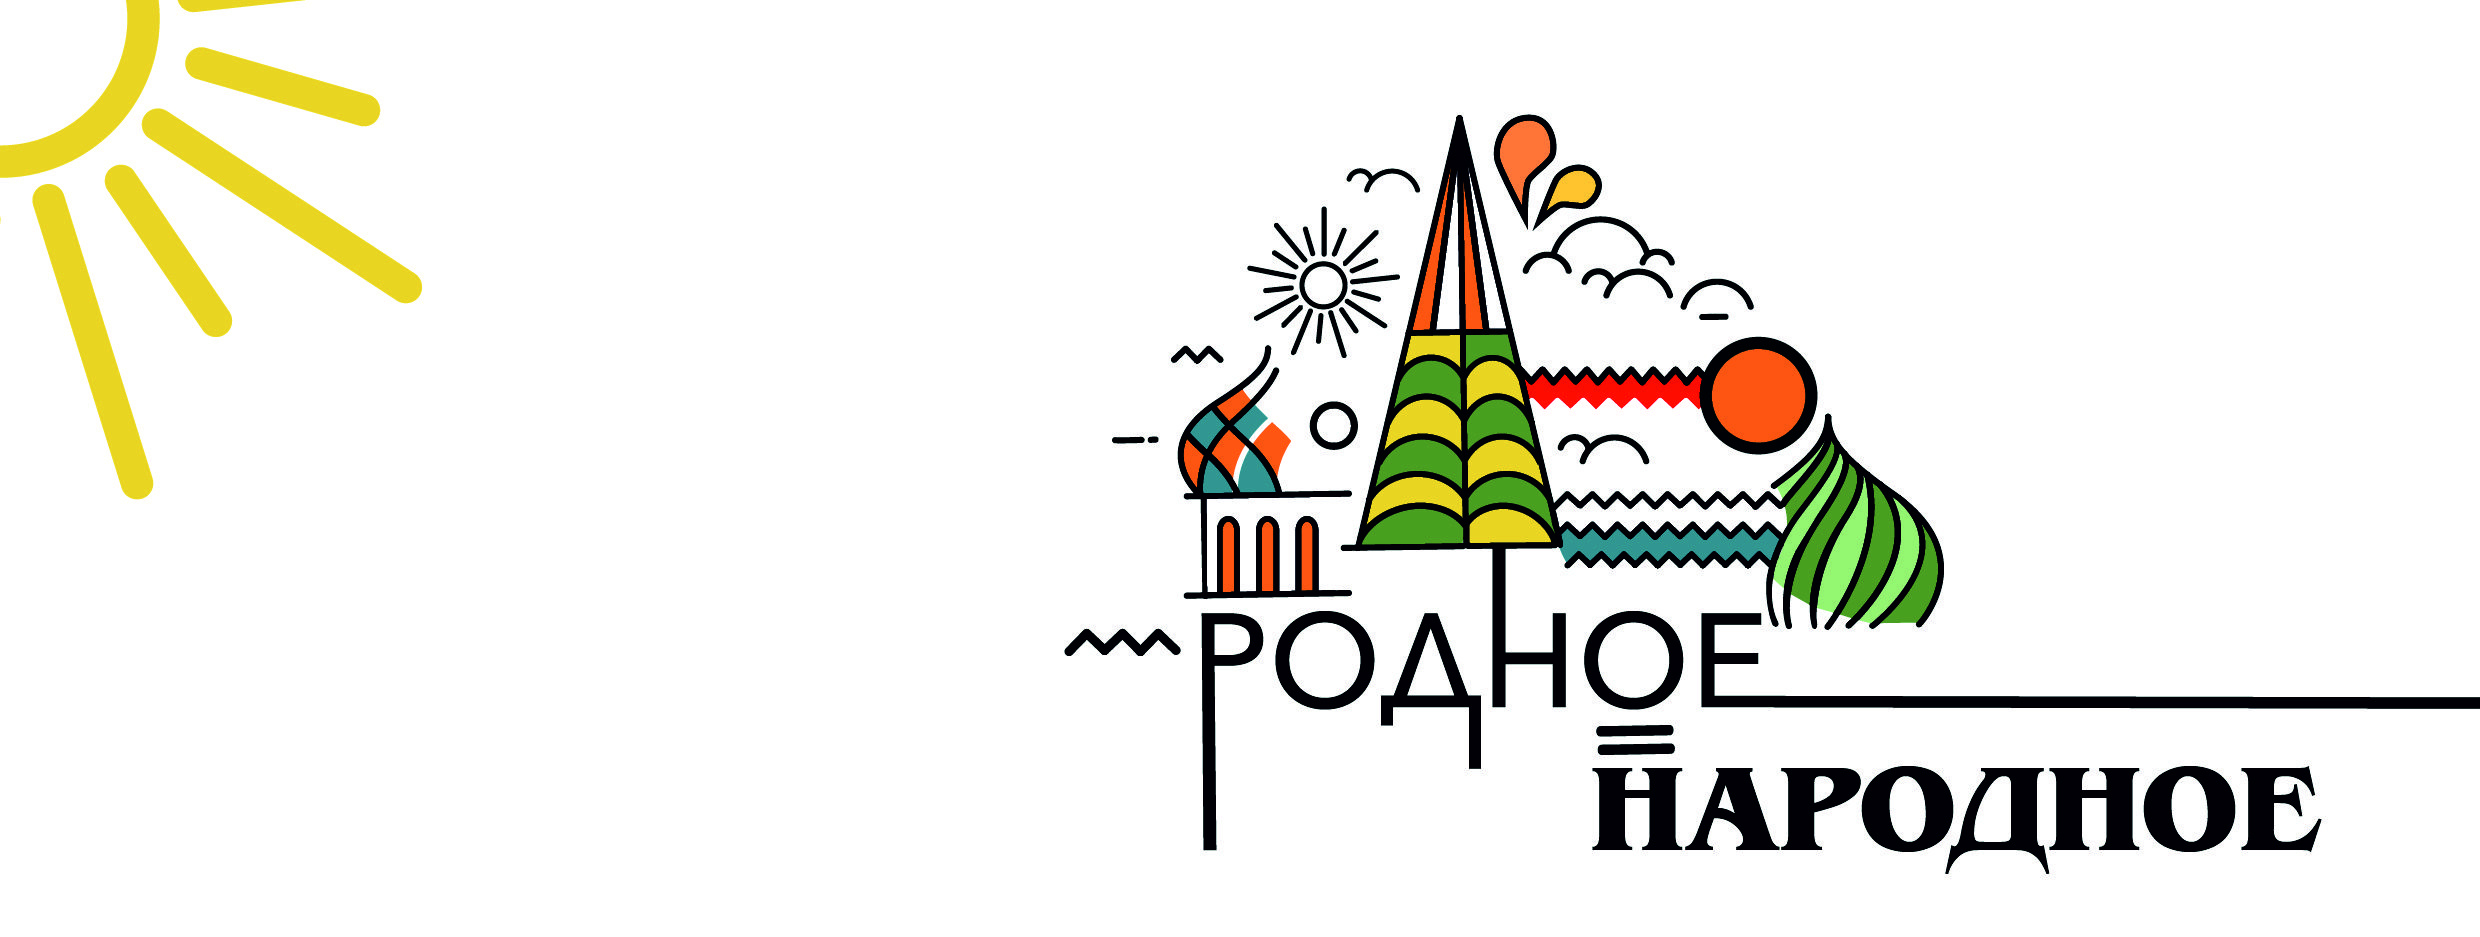 С 19 апреля по 31 августа длился Всероссийский  онлайн-марафон #Родное_Народное